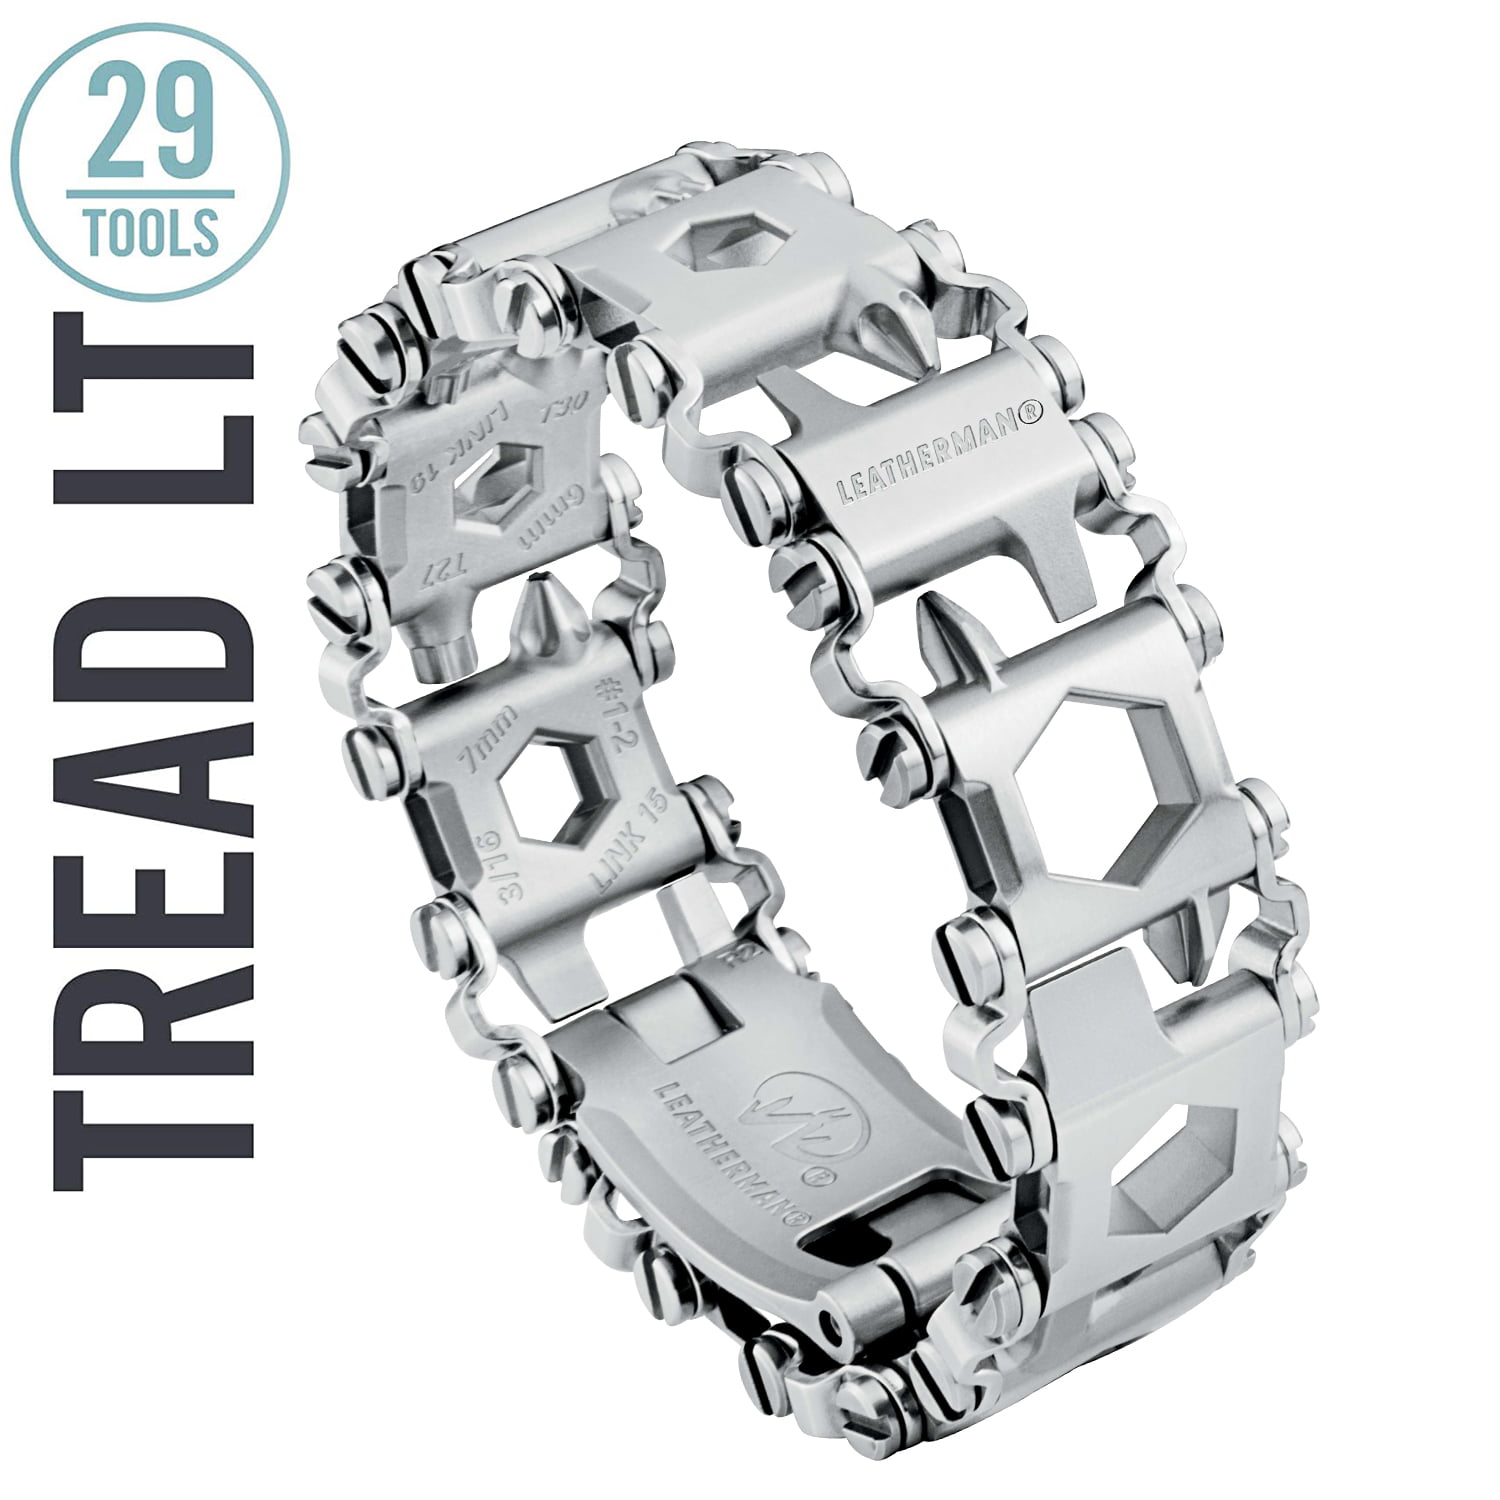 New Leatherman Tread Tempo Watch and Tread LT Slimmer Multi-Tool Bracelet